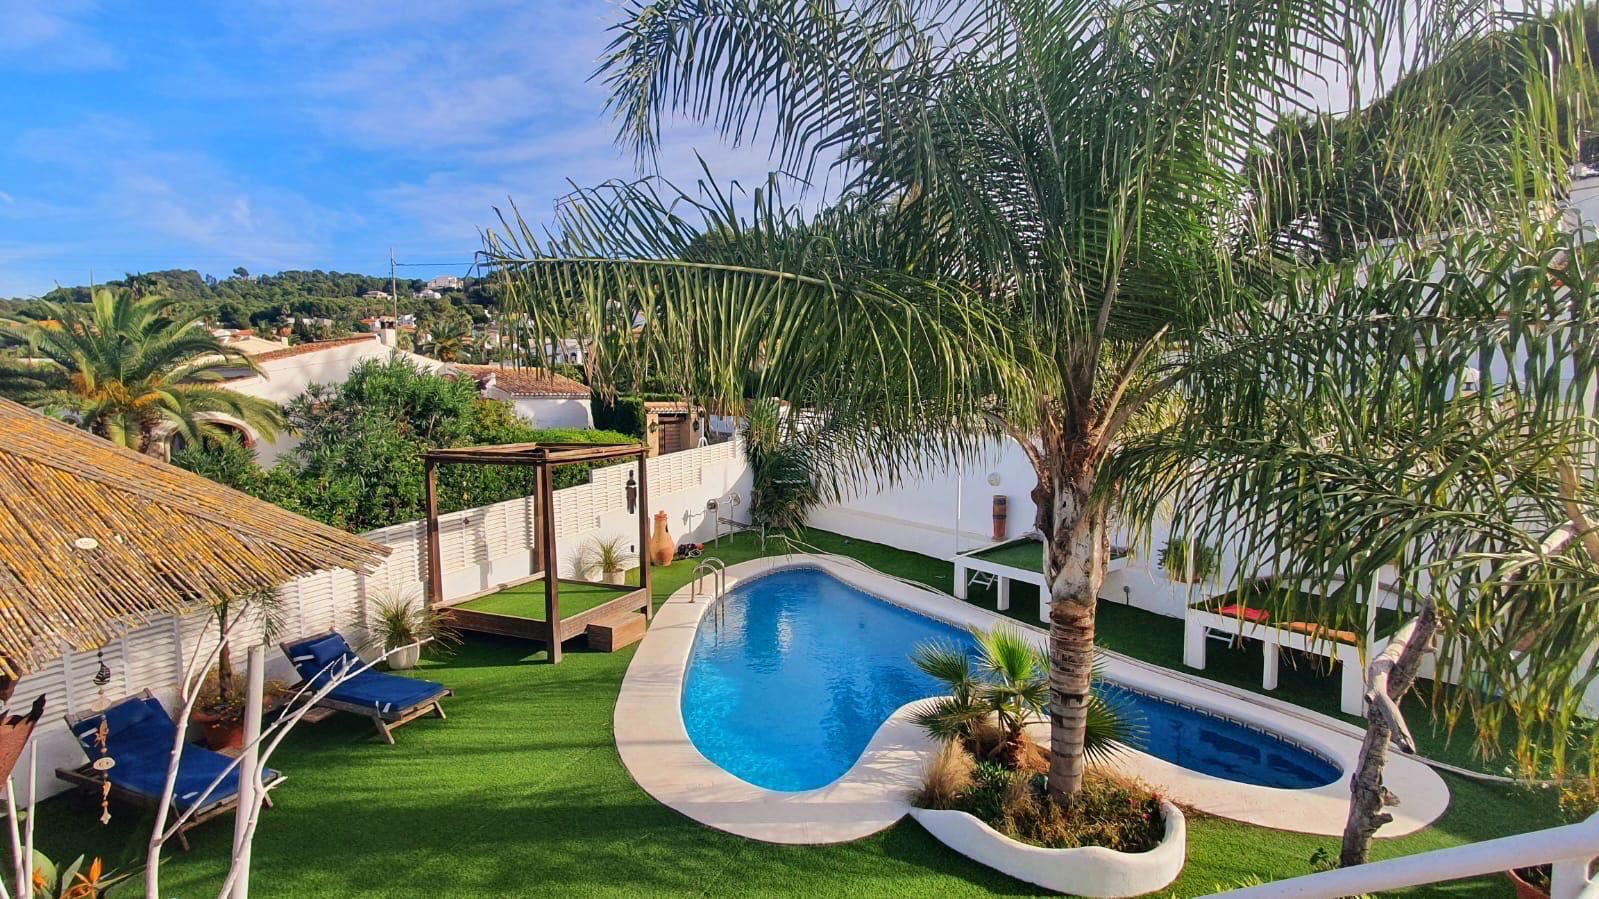 Charmante villa à vendre à Jávea, avec piscine, zone barbecue, garage et à 1Km de la plage Arenal.